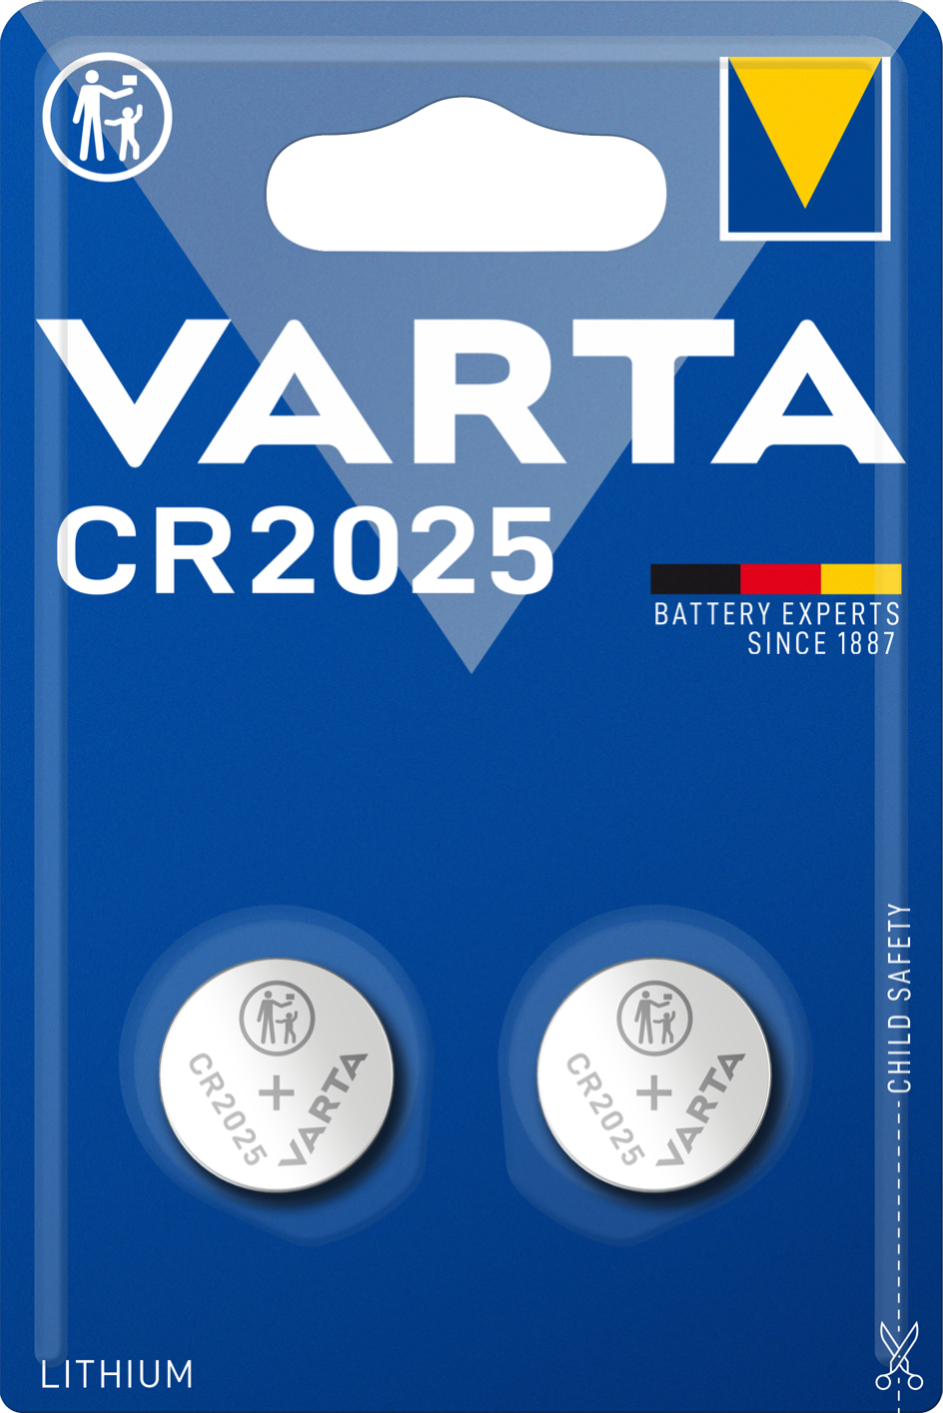 par exemple pour diverses applications intelligentes Varta Power on Demand CR2025 Lot de 10 piles bouton au lithium 3 V flexible et puissant pour les consommateurs finaux mobiles Smart 